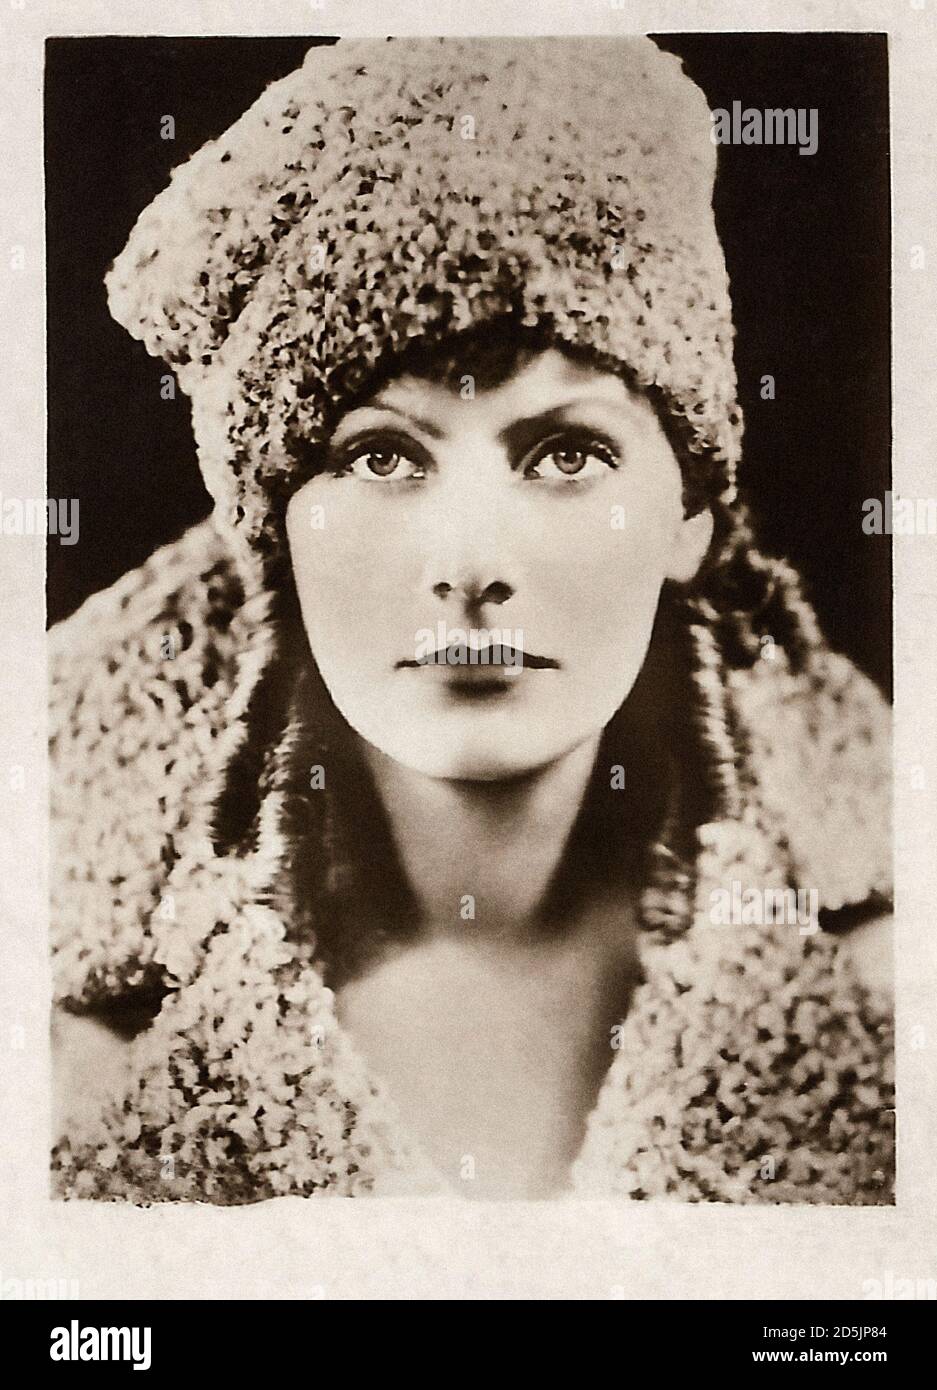 Greta Garbo (nacida Greta Lovisa Gustafsson; 1905 – 1990) fue una actriz sueca-americana. Considerada como una de las actrices más grandes de todos los tiempos, Garbo w Foto de stock